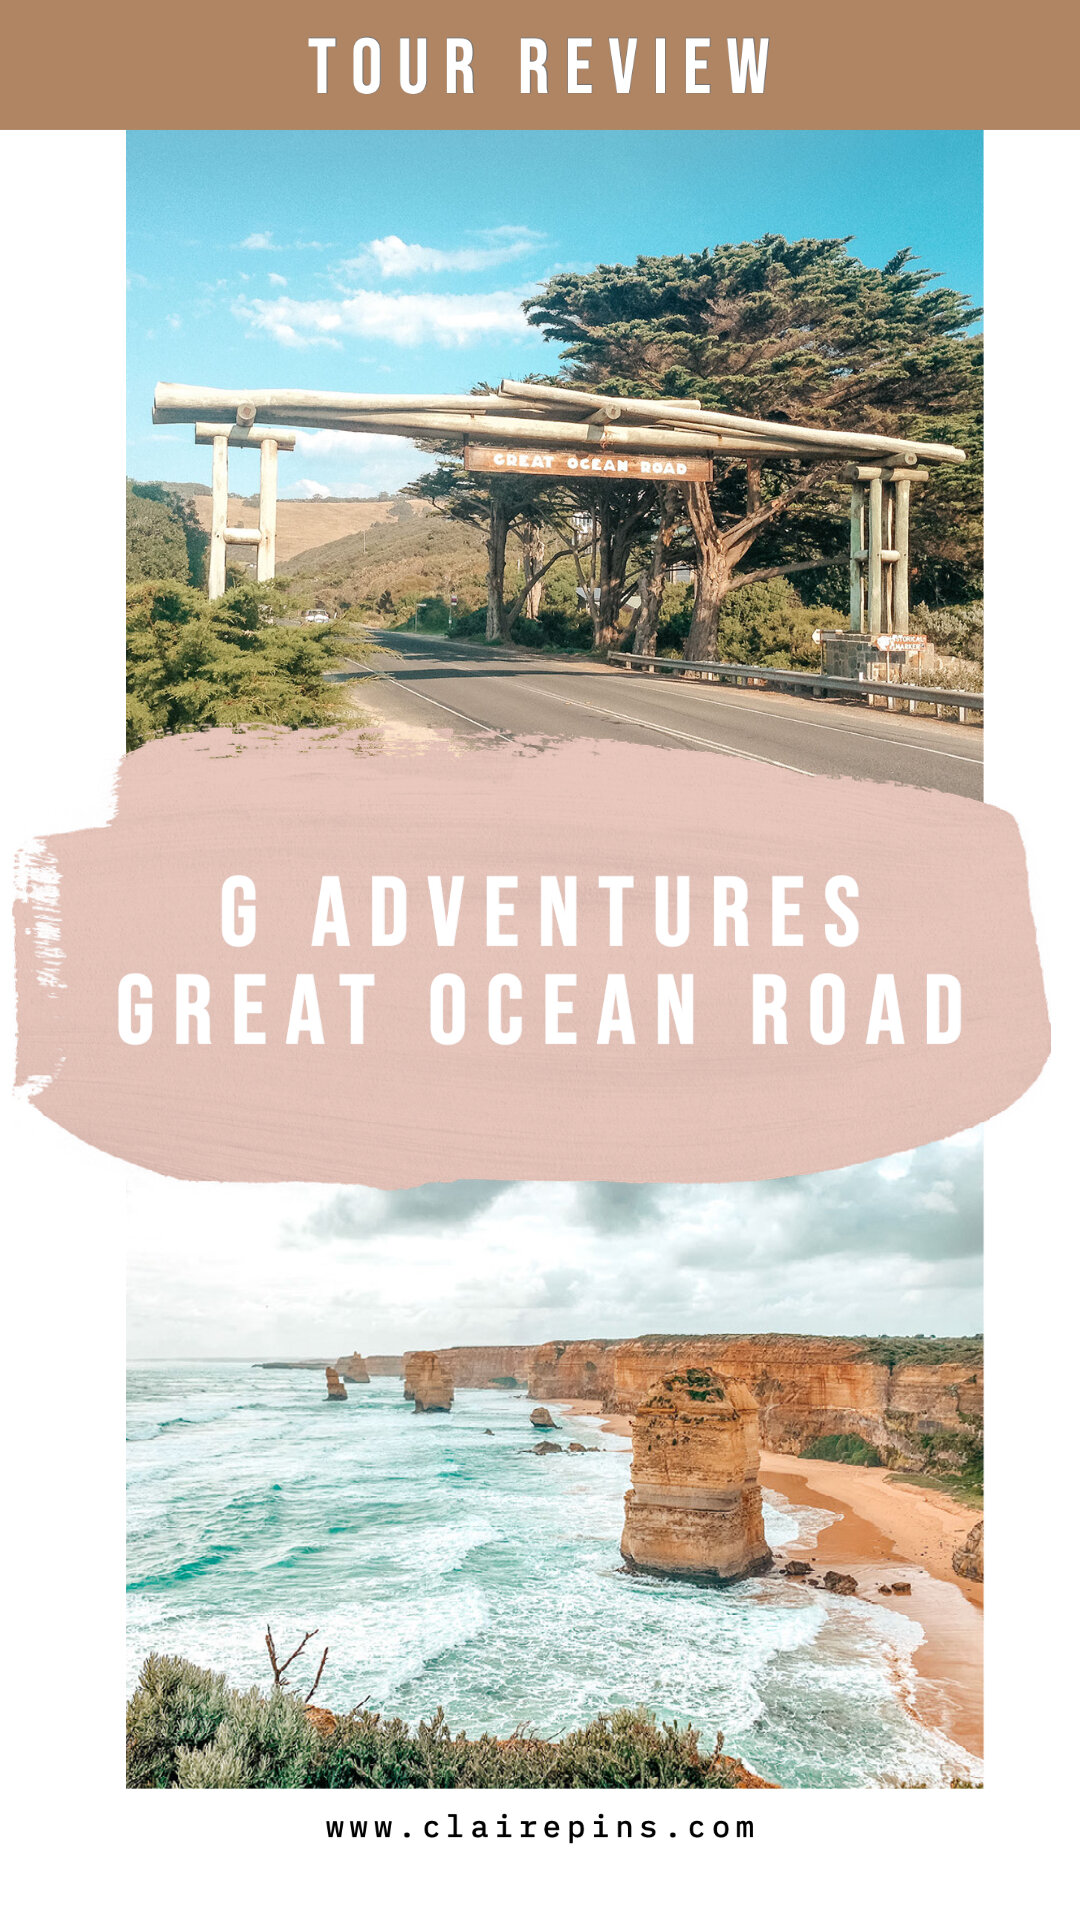 G Adventures Great Ocean Road Review.jpg